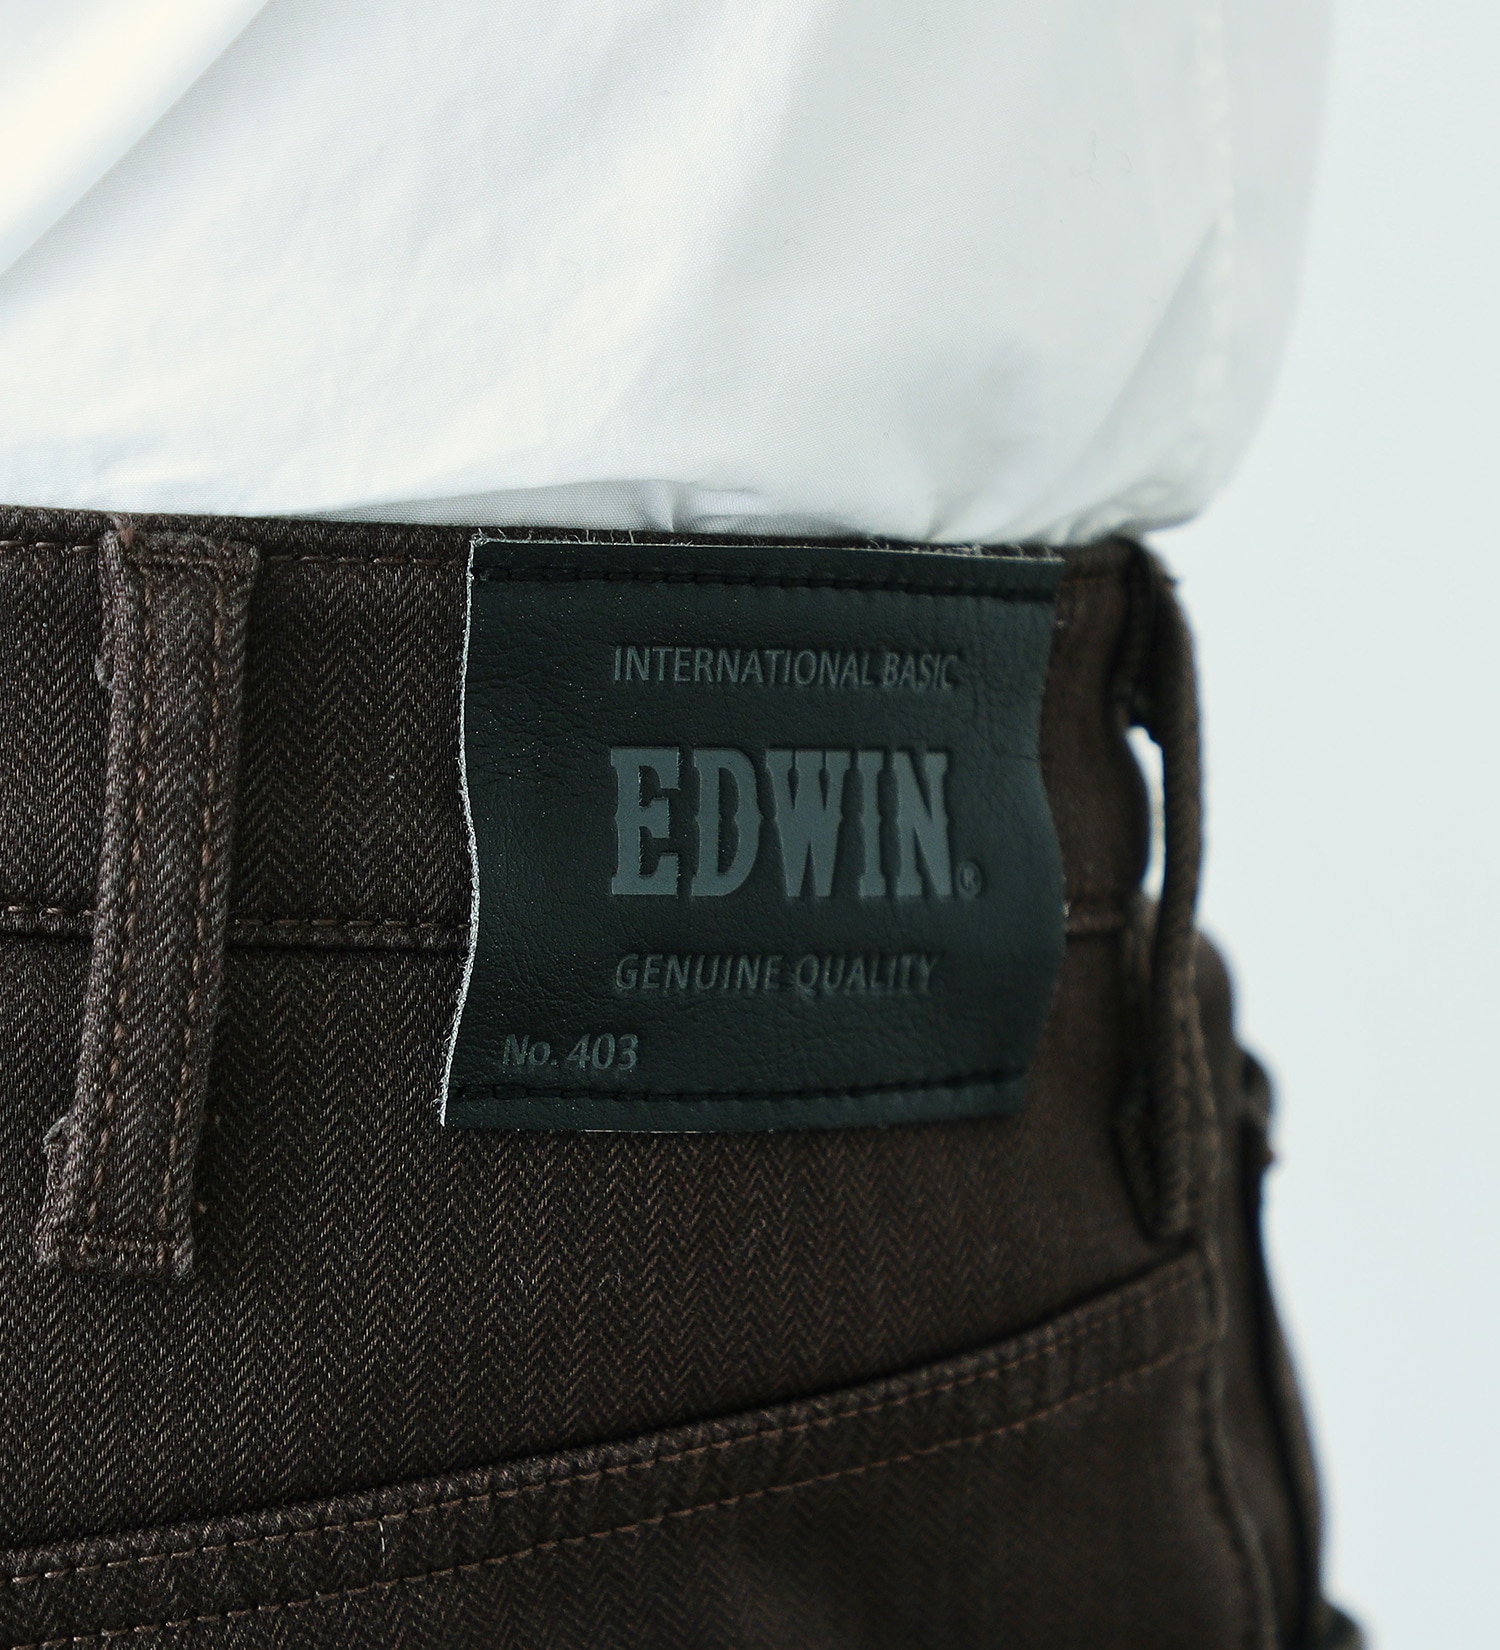 EDWIN(エドウイン)の【BLACKFRIDAY】【大きいサイズ】2層で暖かい EDWIN インターナショナルベーシック レギュラーストレートパンツ403 WILD FIRE 2層ボンディング構造 【暖】|パンツ/パンツ/メンズ|ブラウン